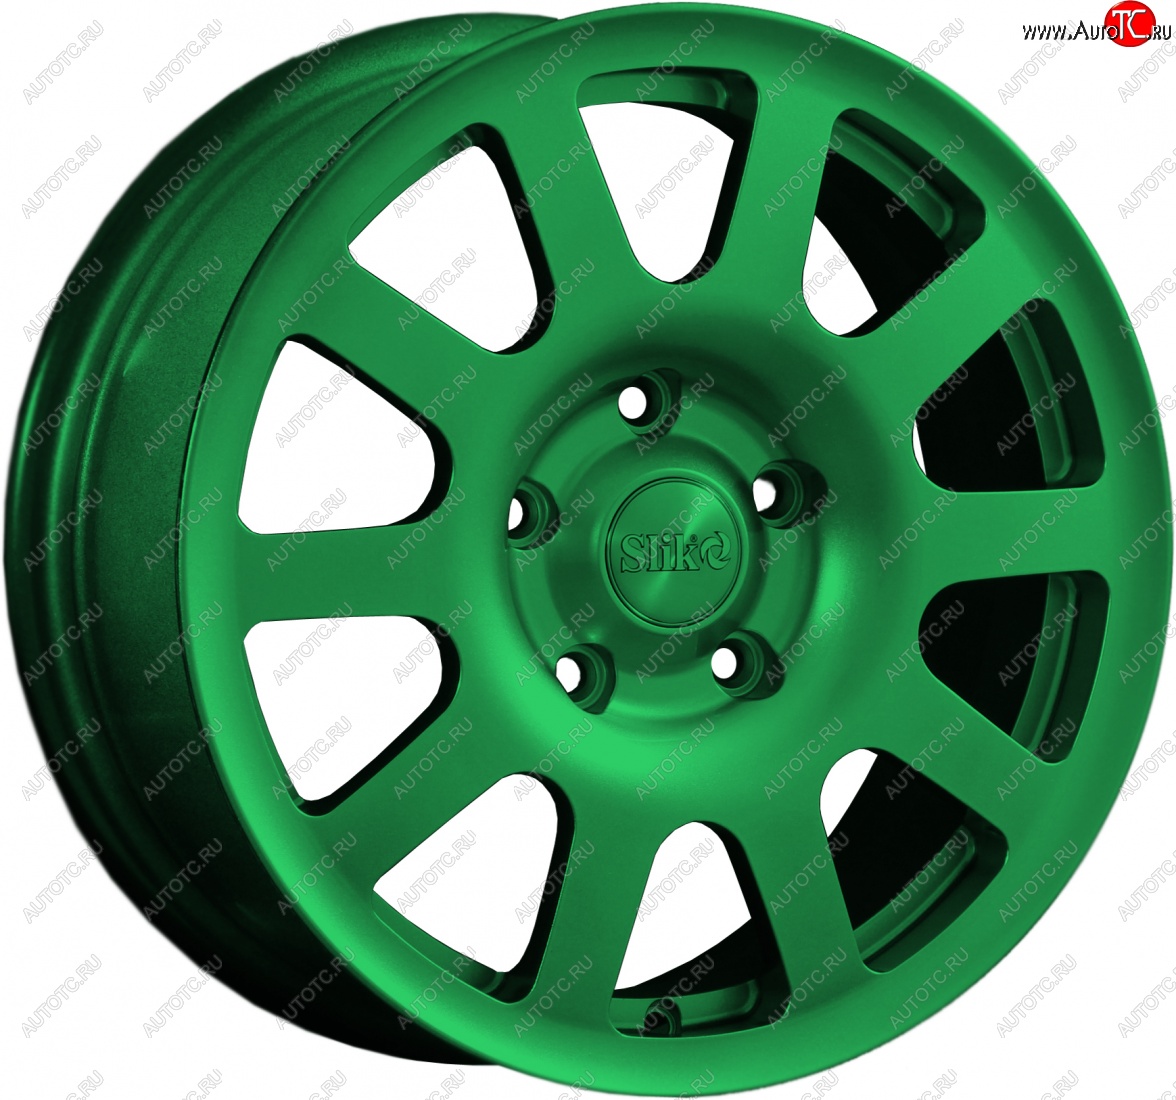 18 999 р. Кованый диск Slik Sport 6.5x16 (Зеленый) Fiat Freemont (2011-2016) 5x127.0xDIA71.6xET40.0 (Цвет: Зеленый)